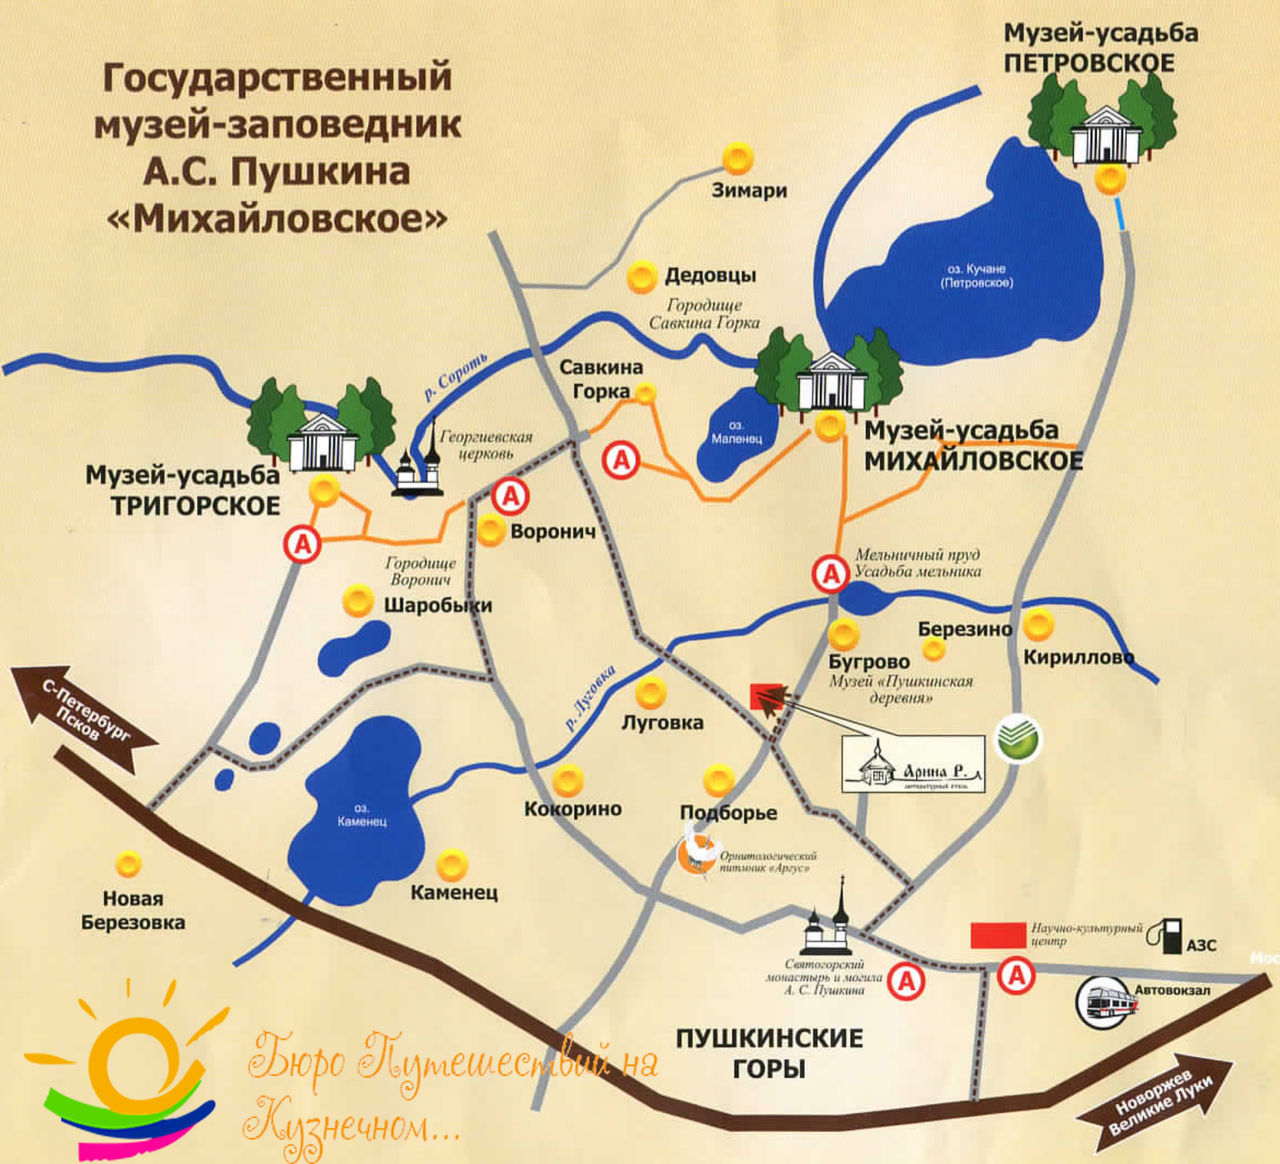 Пушкинские горы музей-заповедник карта схема